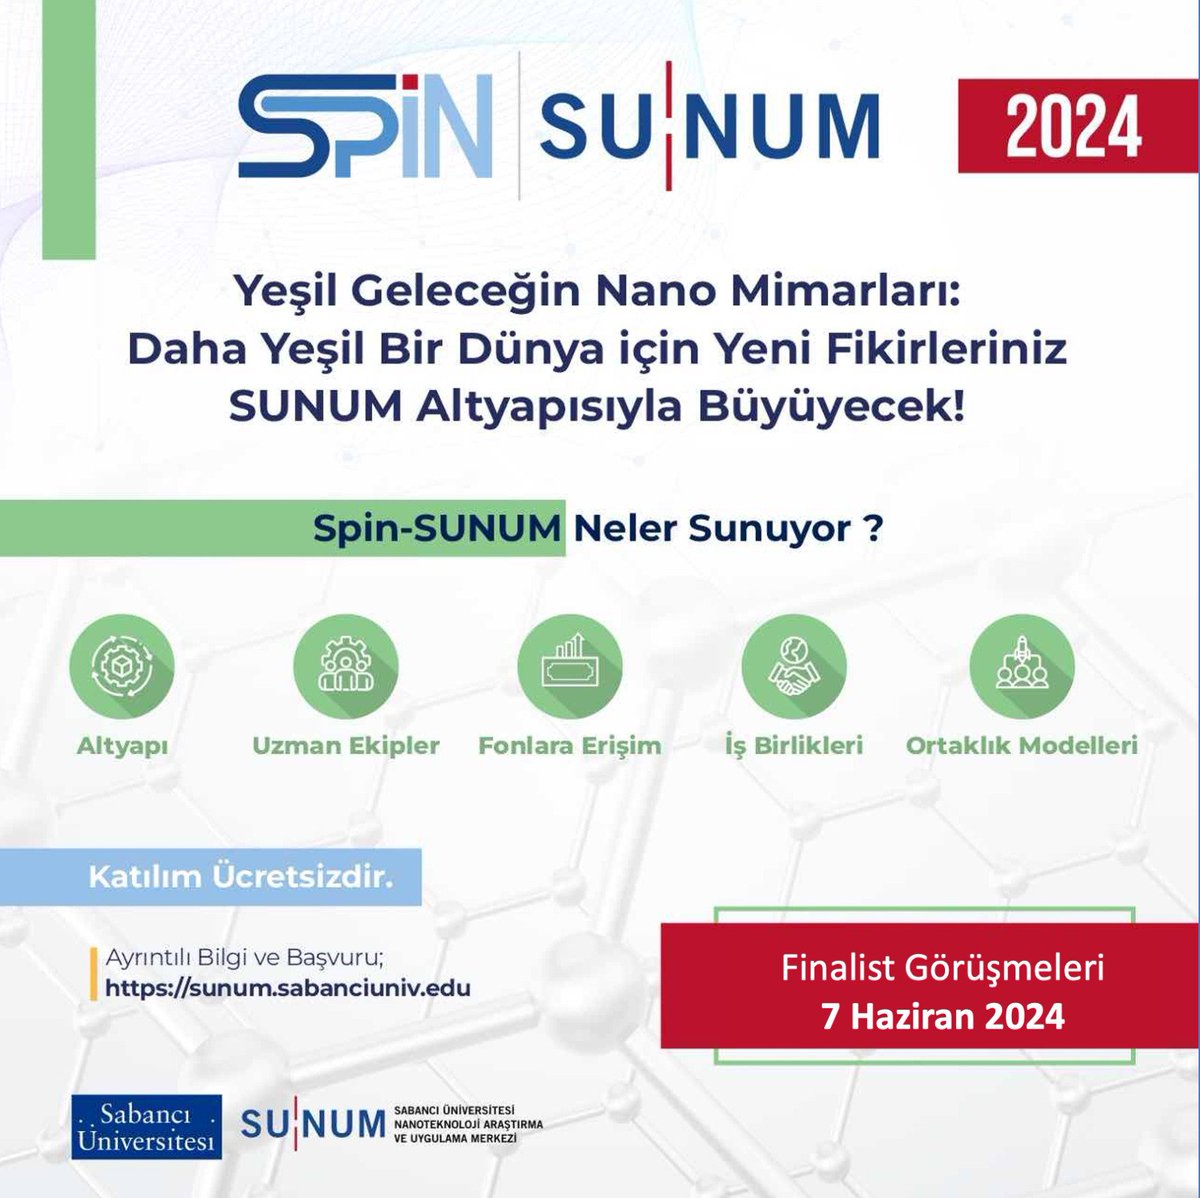 'Sürdürülebilir İleri Malzeme Teknolojileri' Odaklı Start-up Geliştirme Programı olan Spin-SUNUM değerlendirmeleri yapıldı. 5 start-up’ın finale kaldığı Spin- SUNUM Programında 7 Haziran’da finalist görüşmeleri gerçekleştirilecek.